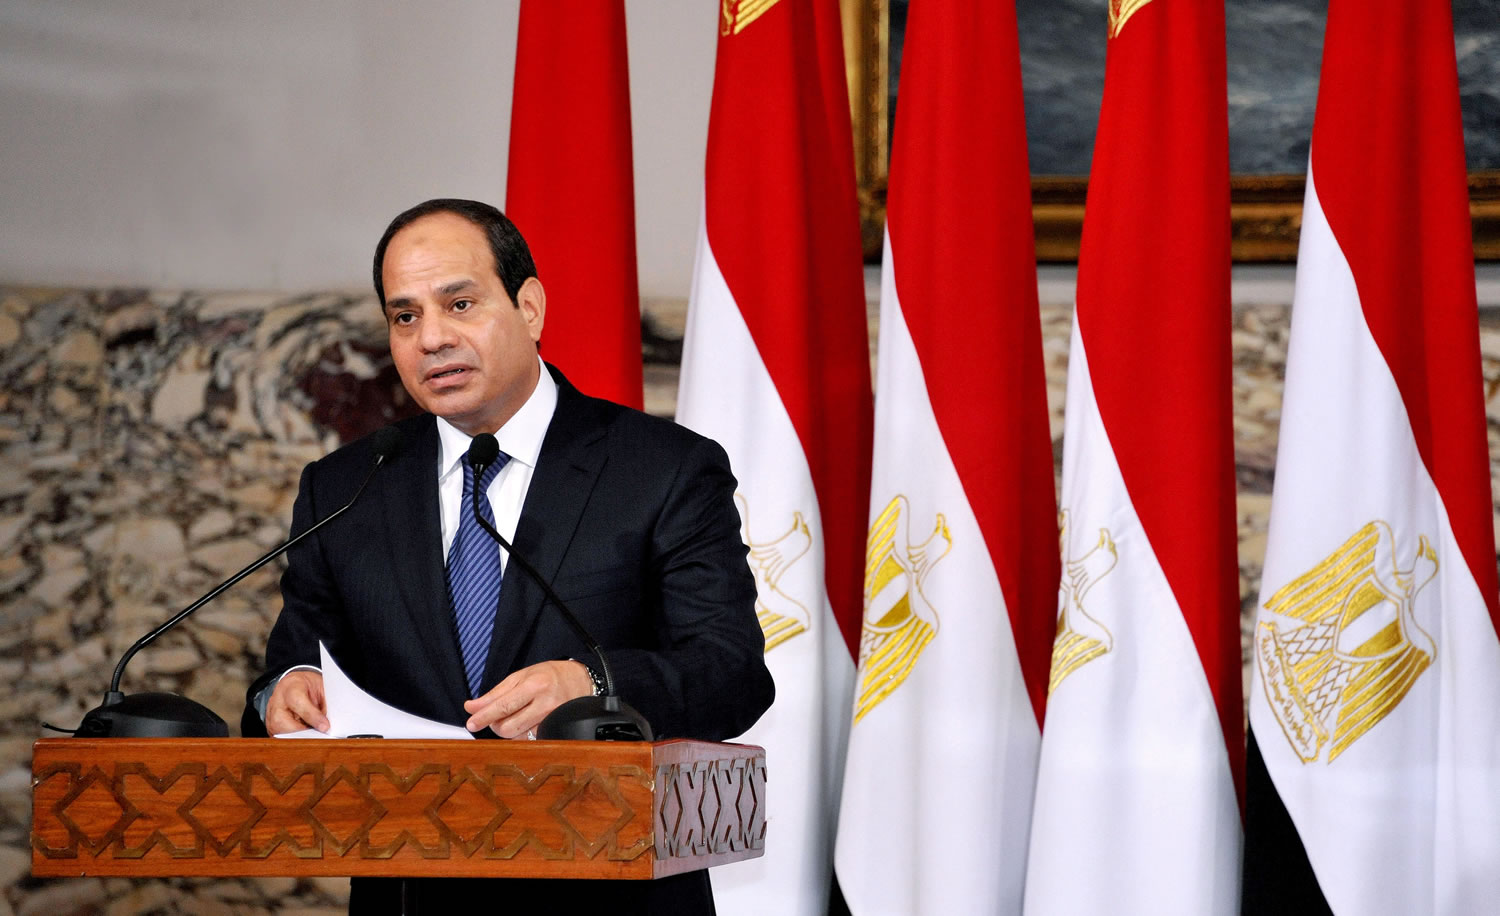 Abdel-Fattah el-Sissi
Egypt's president